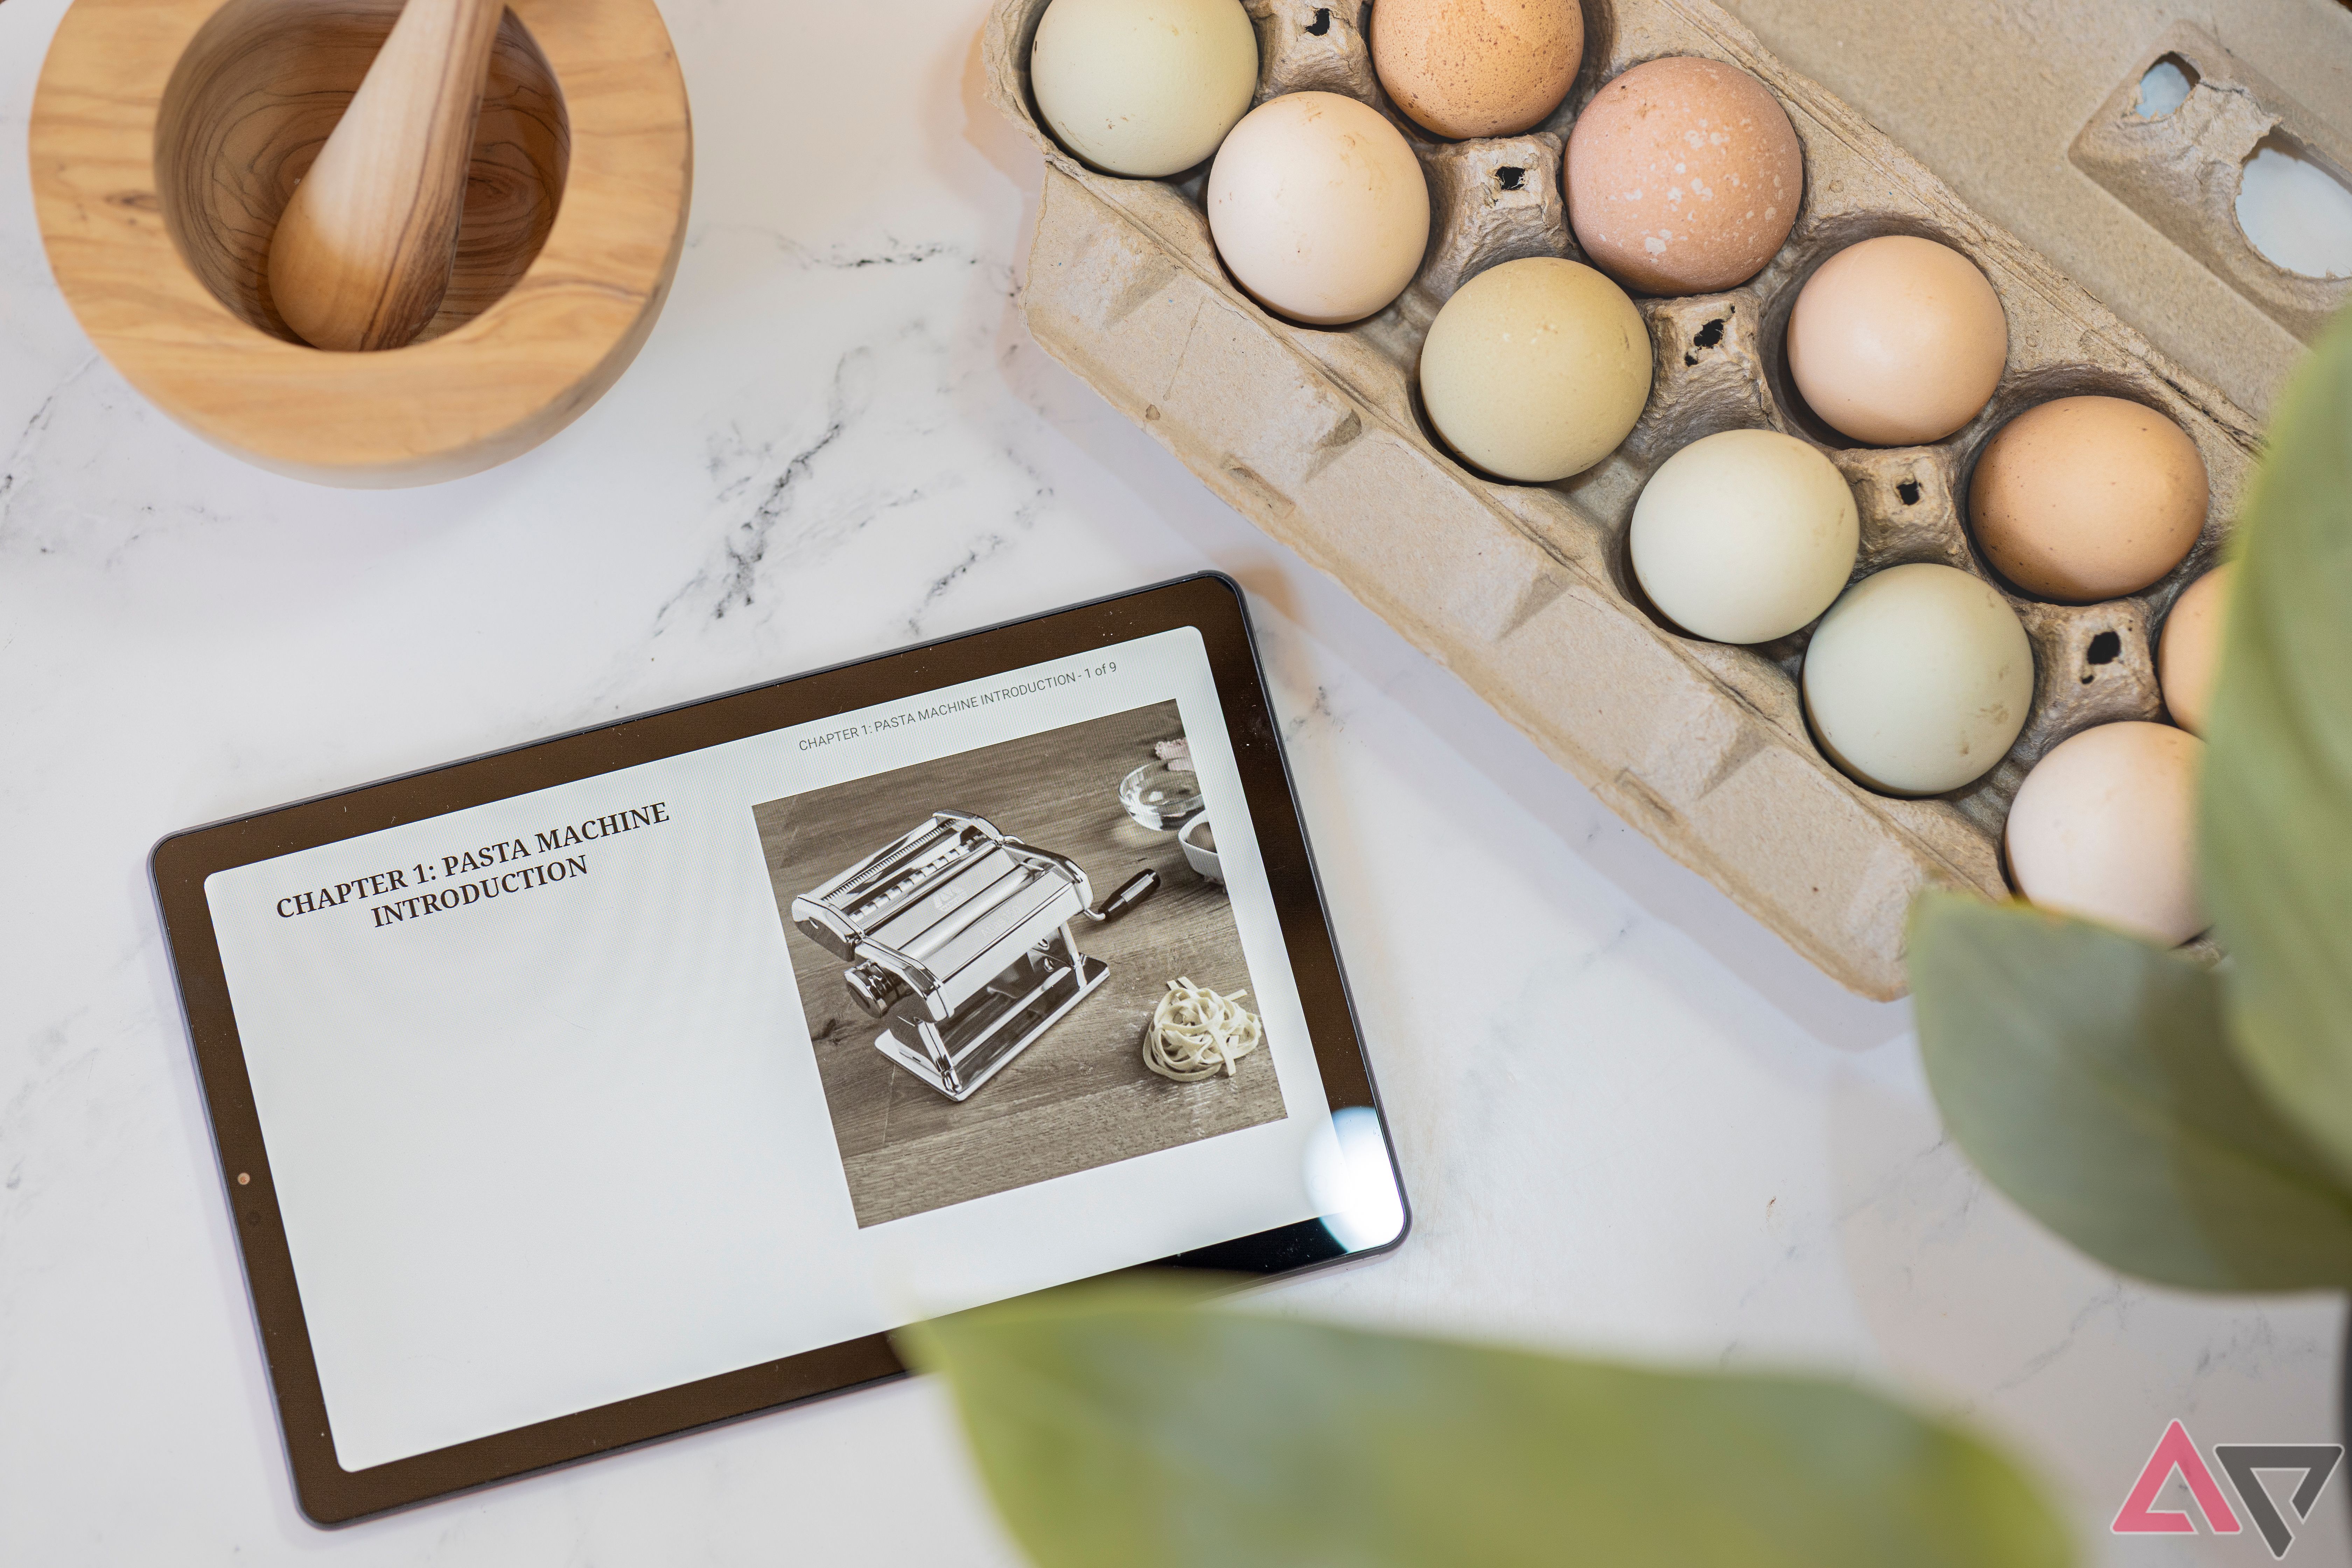 Recanto 9" Lenovo Tablet aberto para livro de receitas de macarrão ao lado de ovos e almofariz e pilão